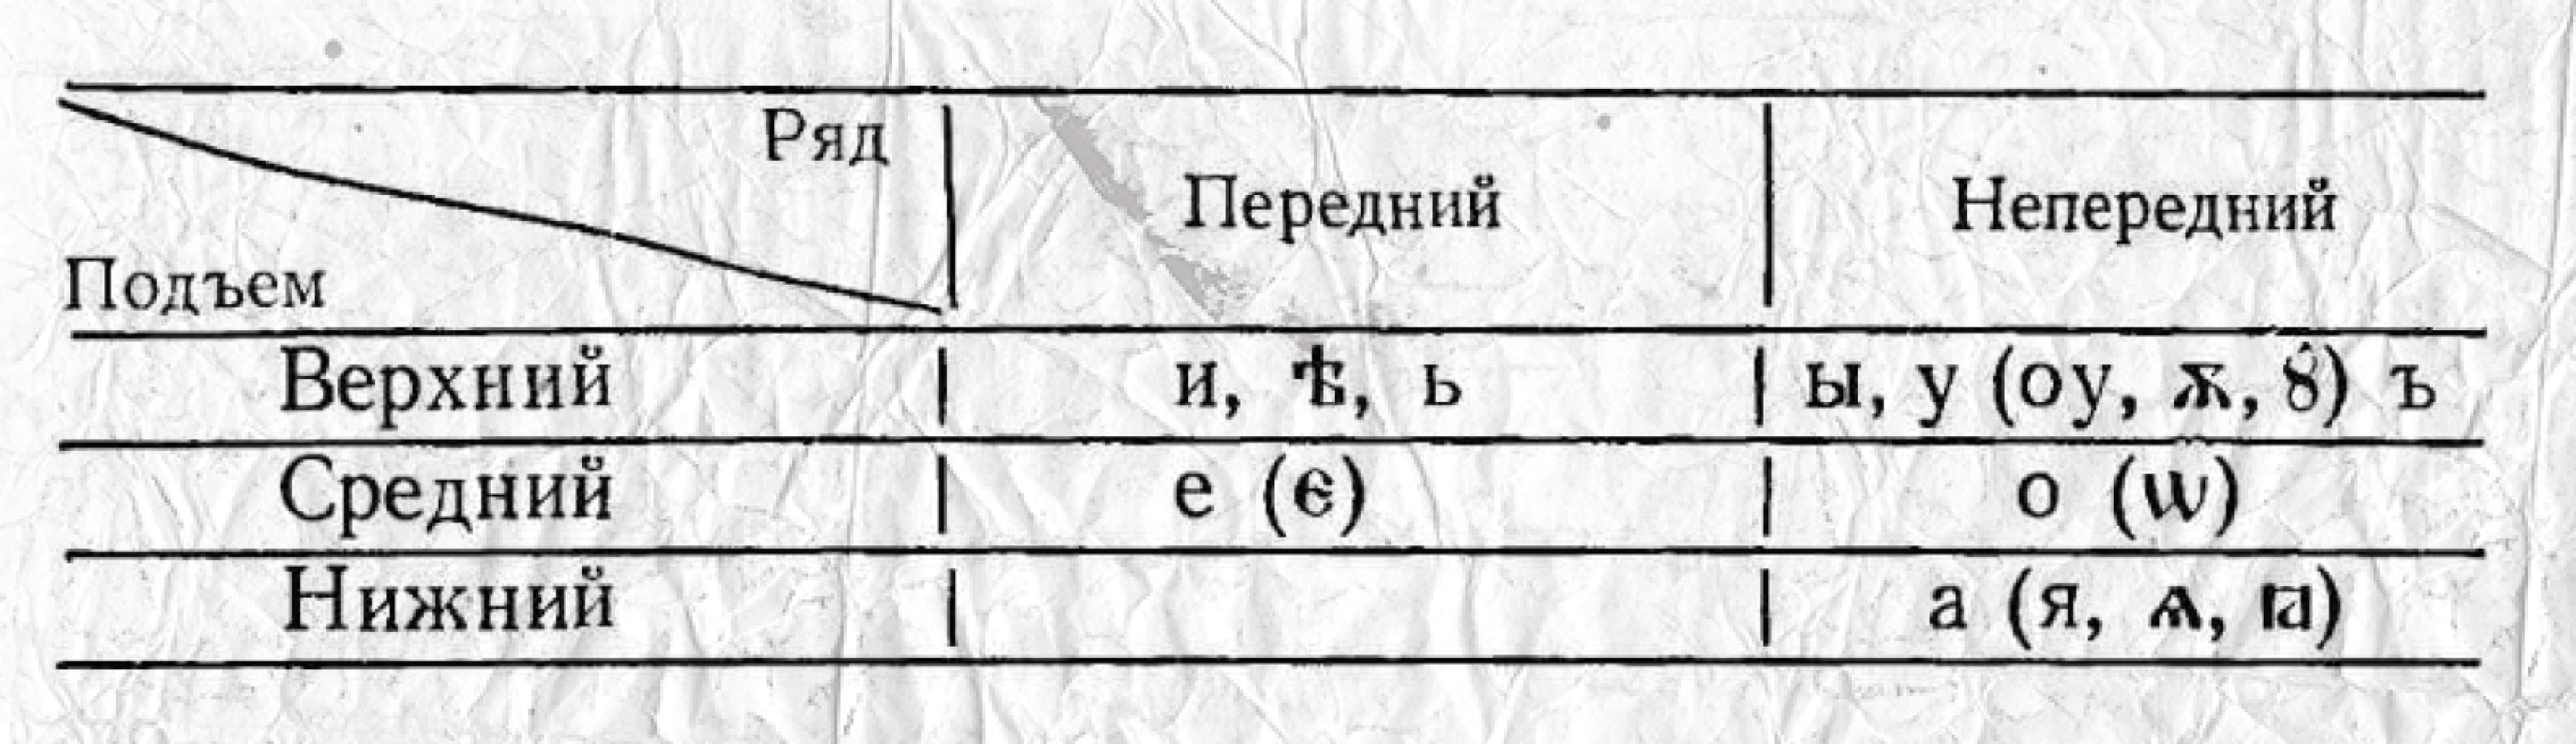 Таблица гласных звуков в древнерусском языке